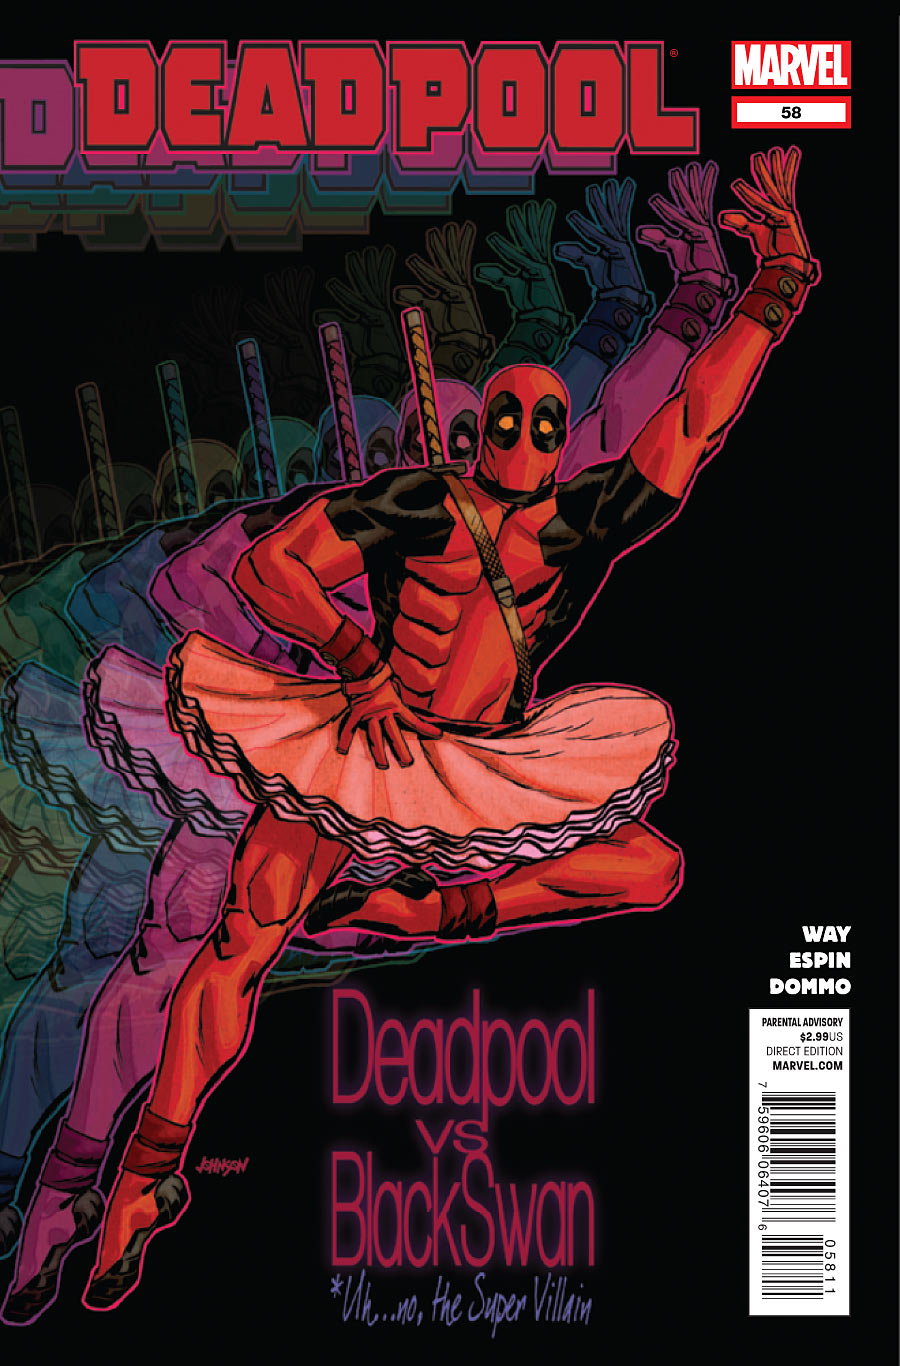 Deadpool Vol. 2 #58